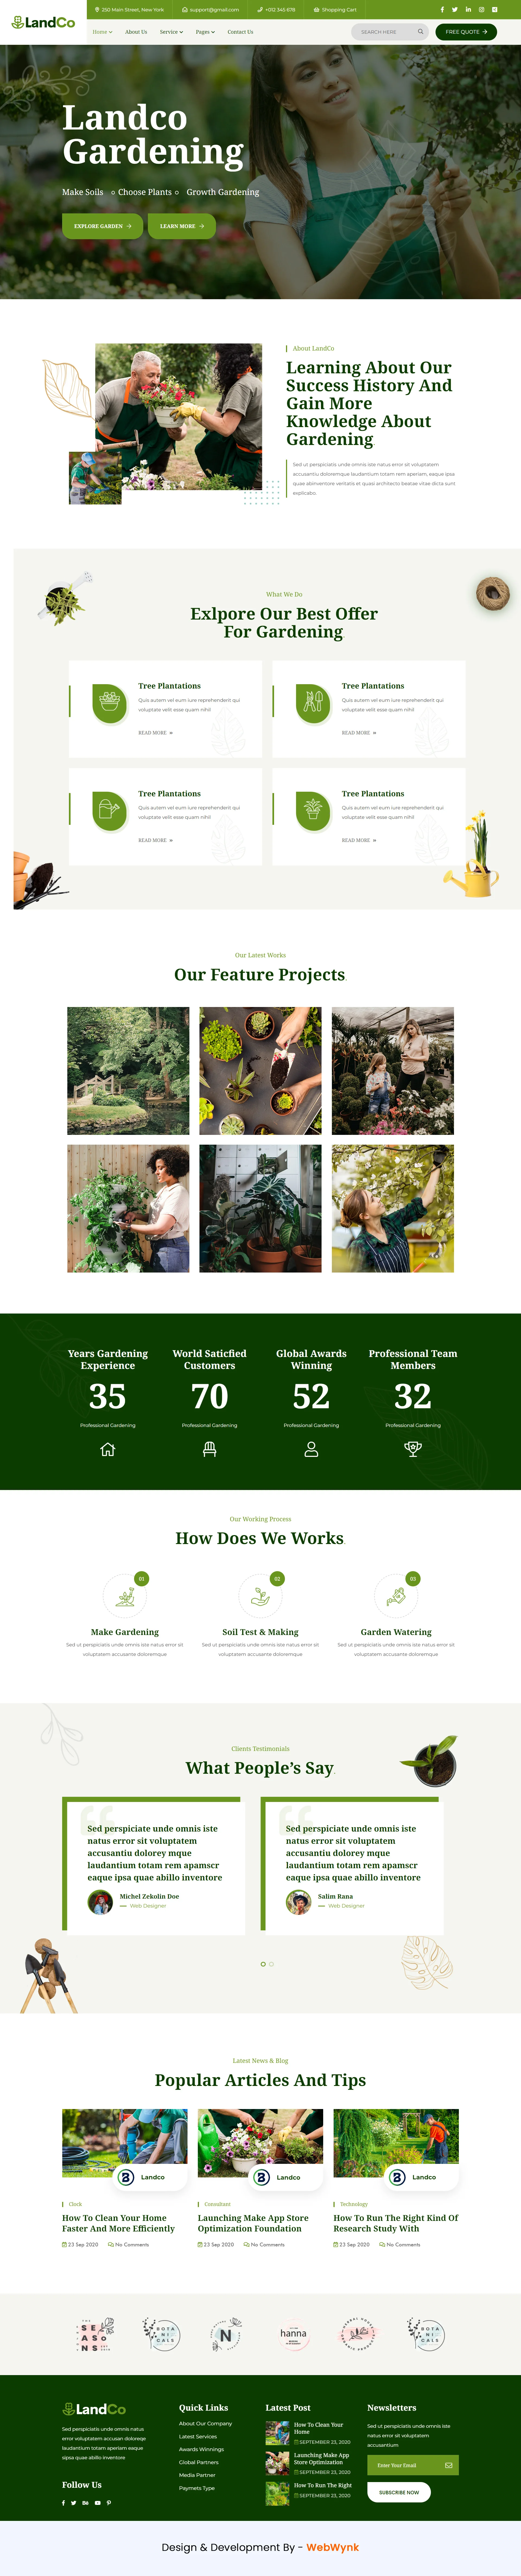 gardening-service-website-design-webwynk